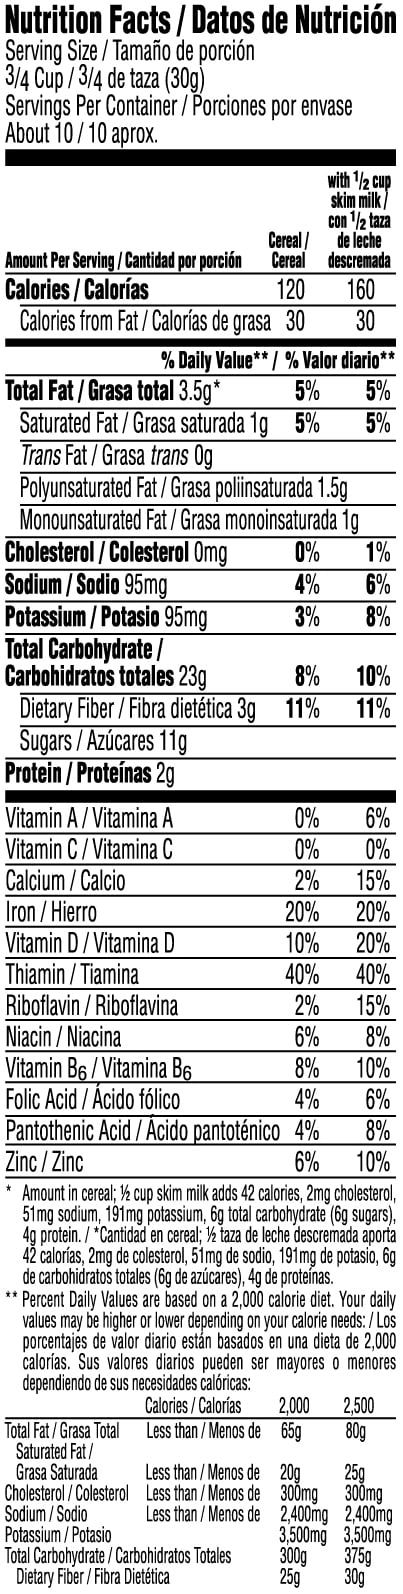 30 Krave Cereal Nutrition Label Labels Database 2020